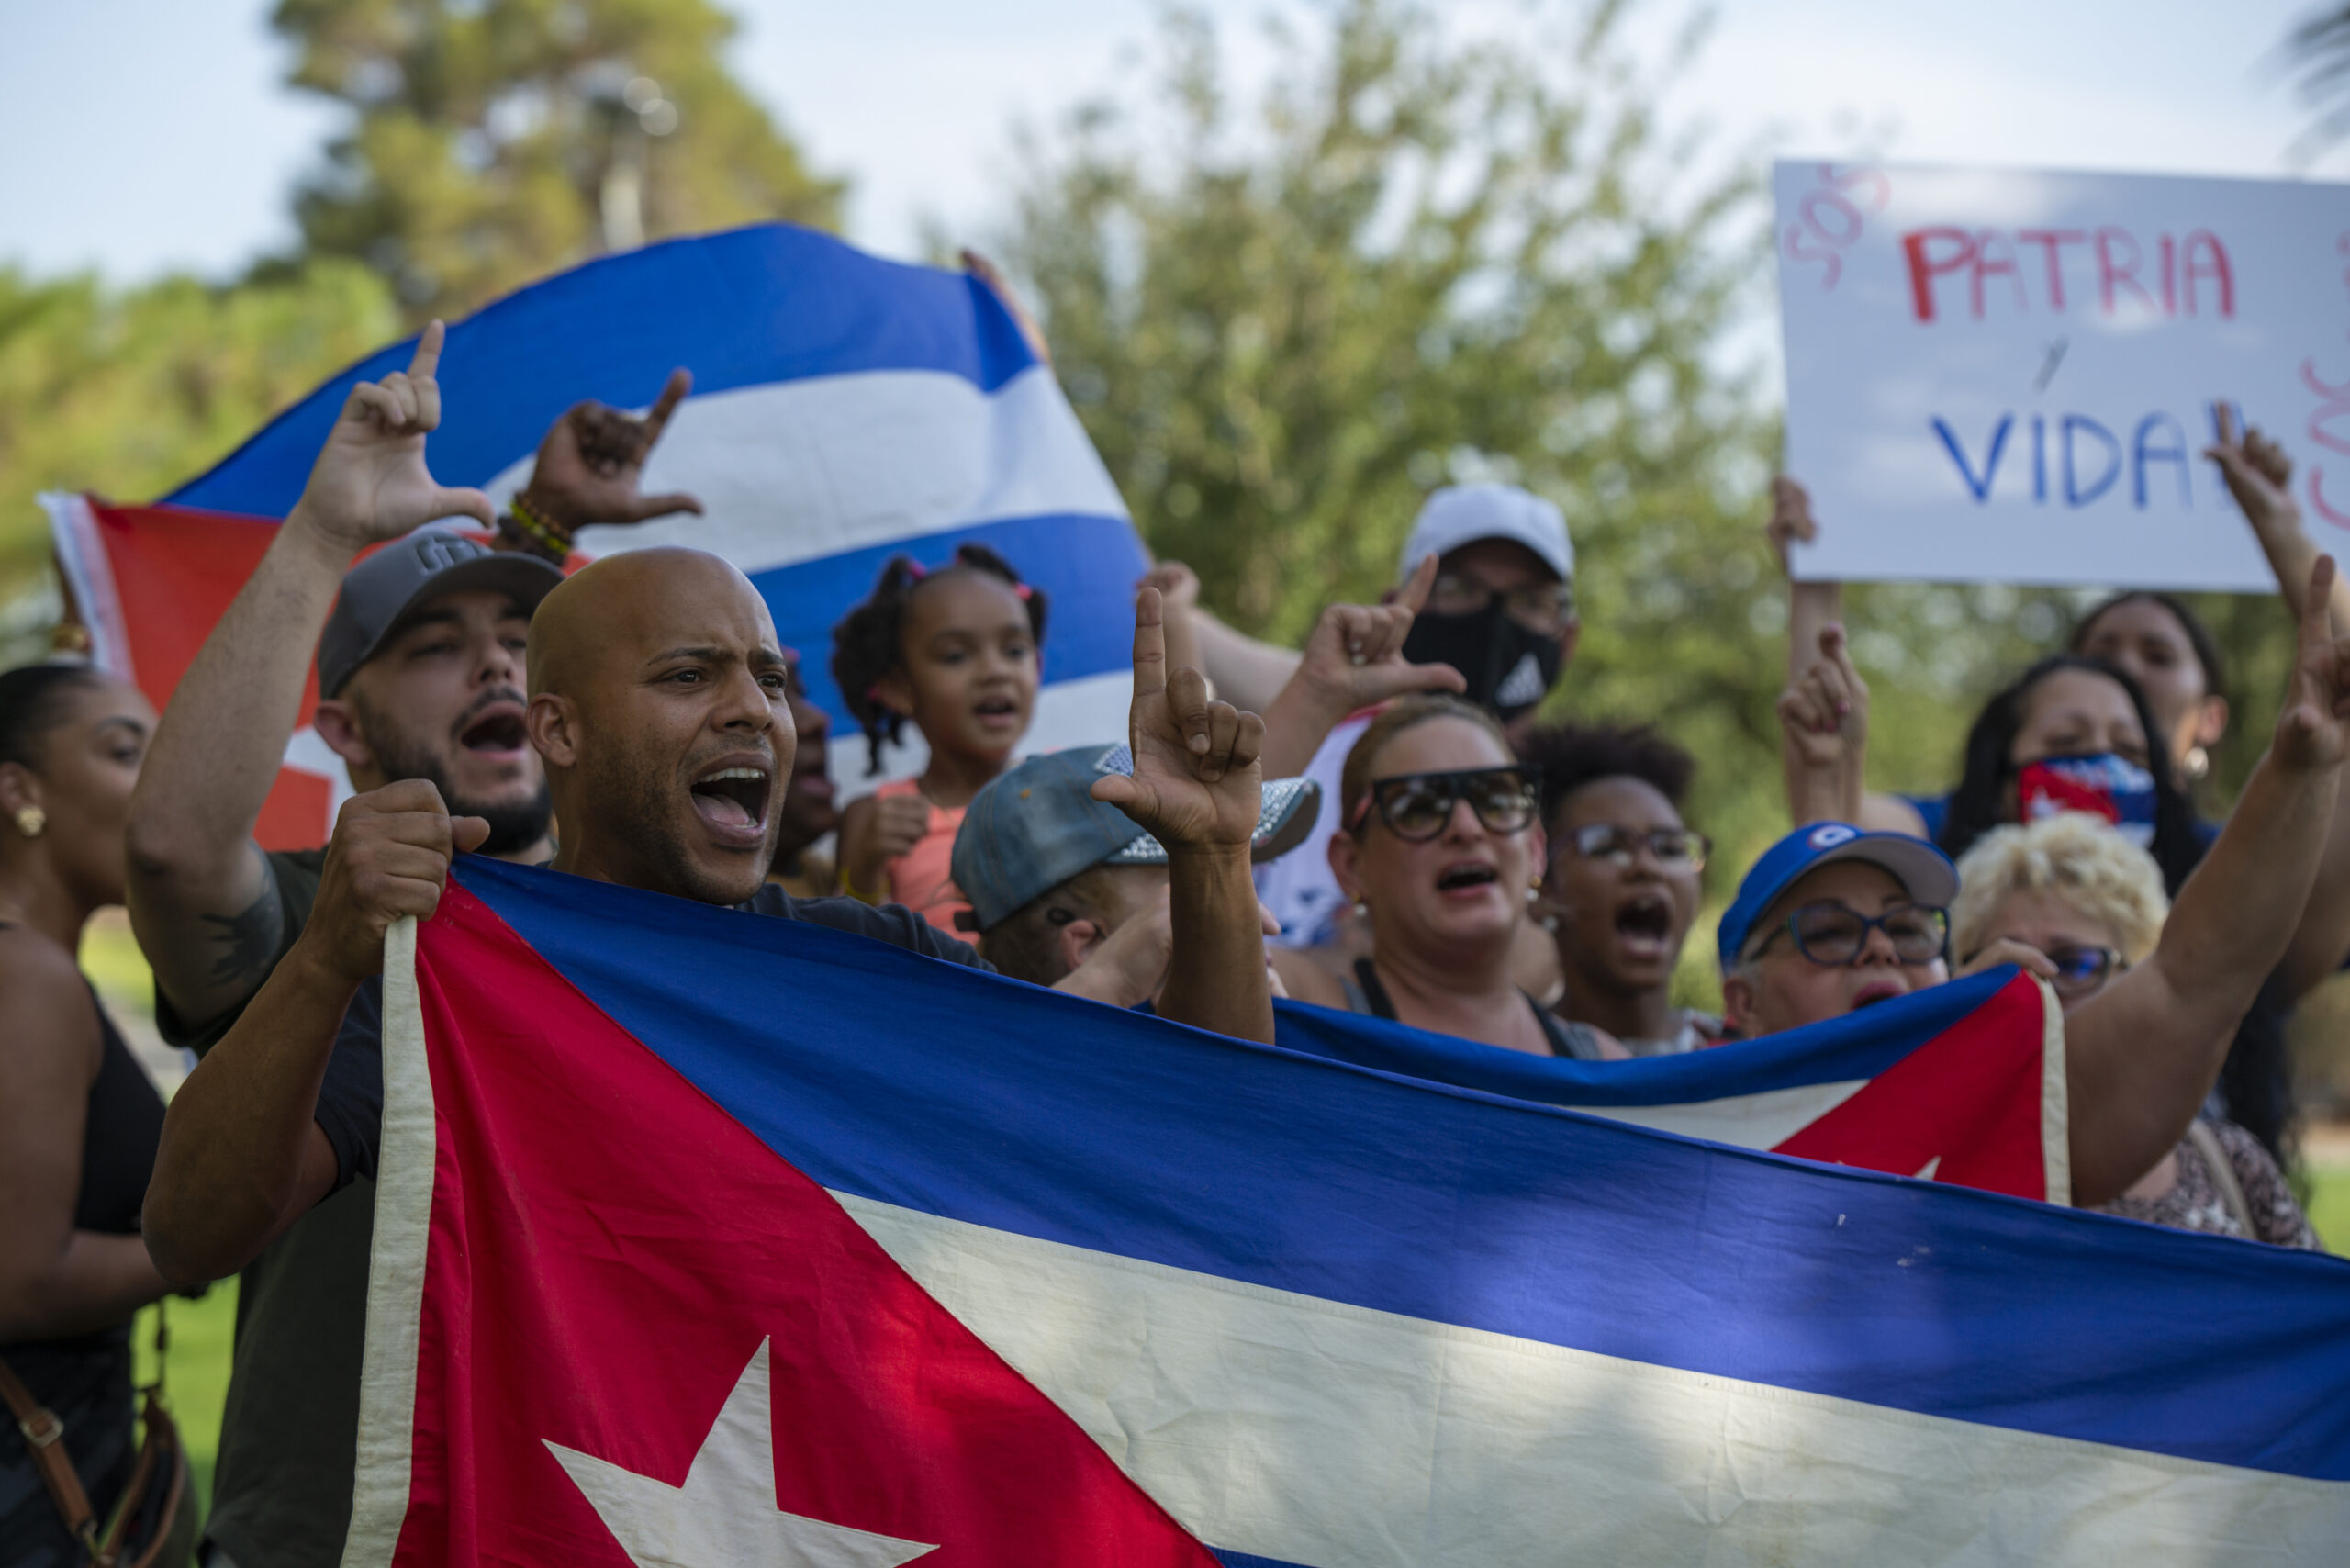 Los gritos de “Libertad” resonaron a 2,000 millas de Cuba en  manifestaciones en Las Vegas - The Nevada Independent